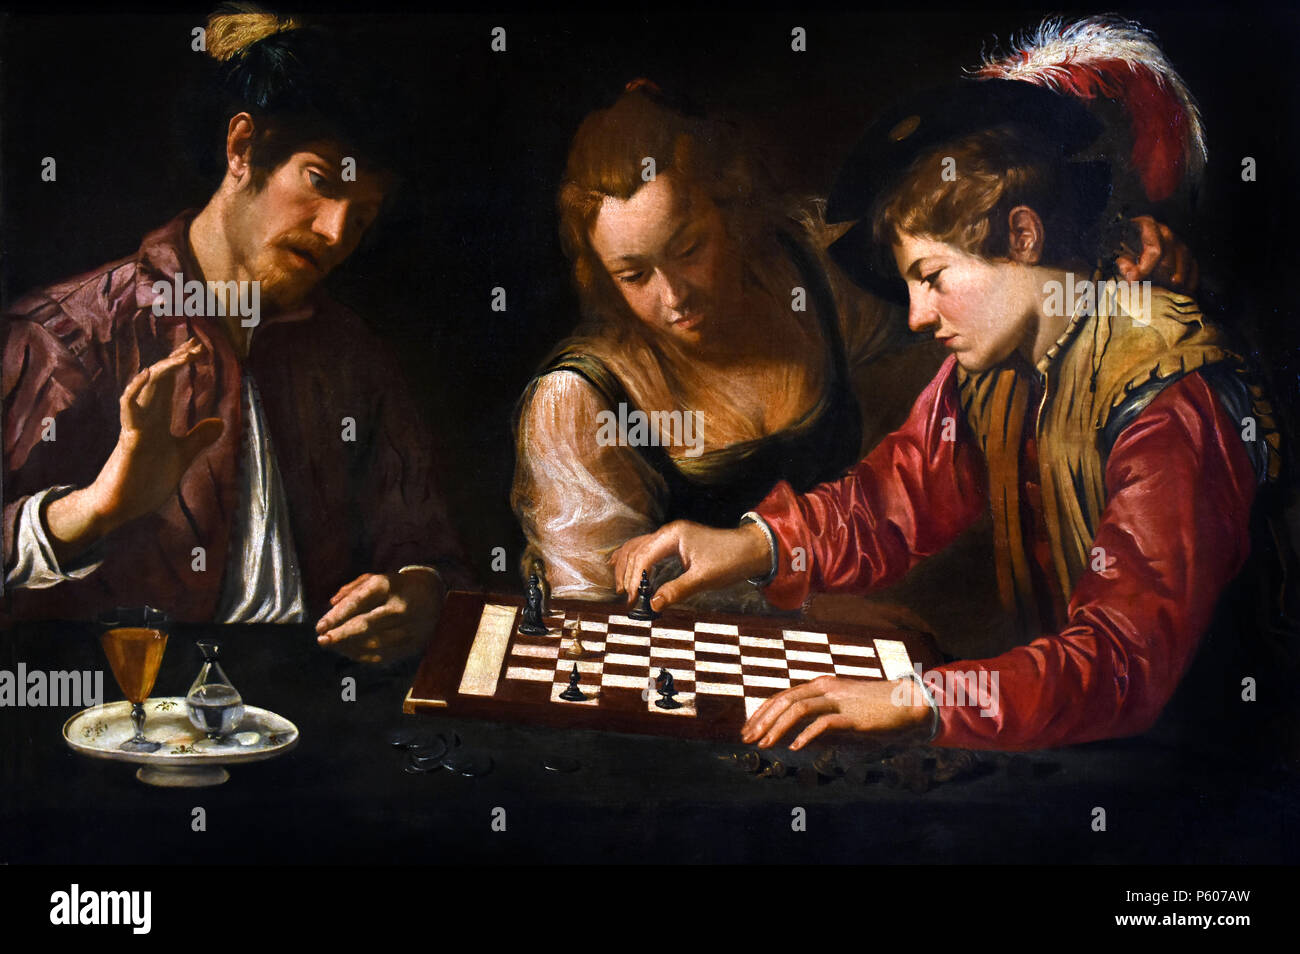 Schachspieler, CARAVAGGESCO, Maler, Italien, Italienisch (im Stil von Michelangelo Merisi da Caravaggio gemalt. Konkret bedeutet dies einen sehr realistischen Darstellung von Figuren, die sich auf dramatische Situationen und Themen, und einen hohen Kontrast von Licht und Dunkel (Hell-dunkel). 16.-17. Jahrhundert Stockfoto